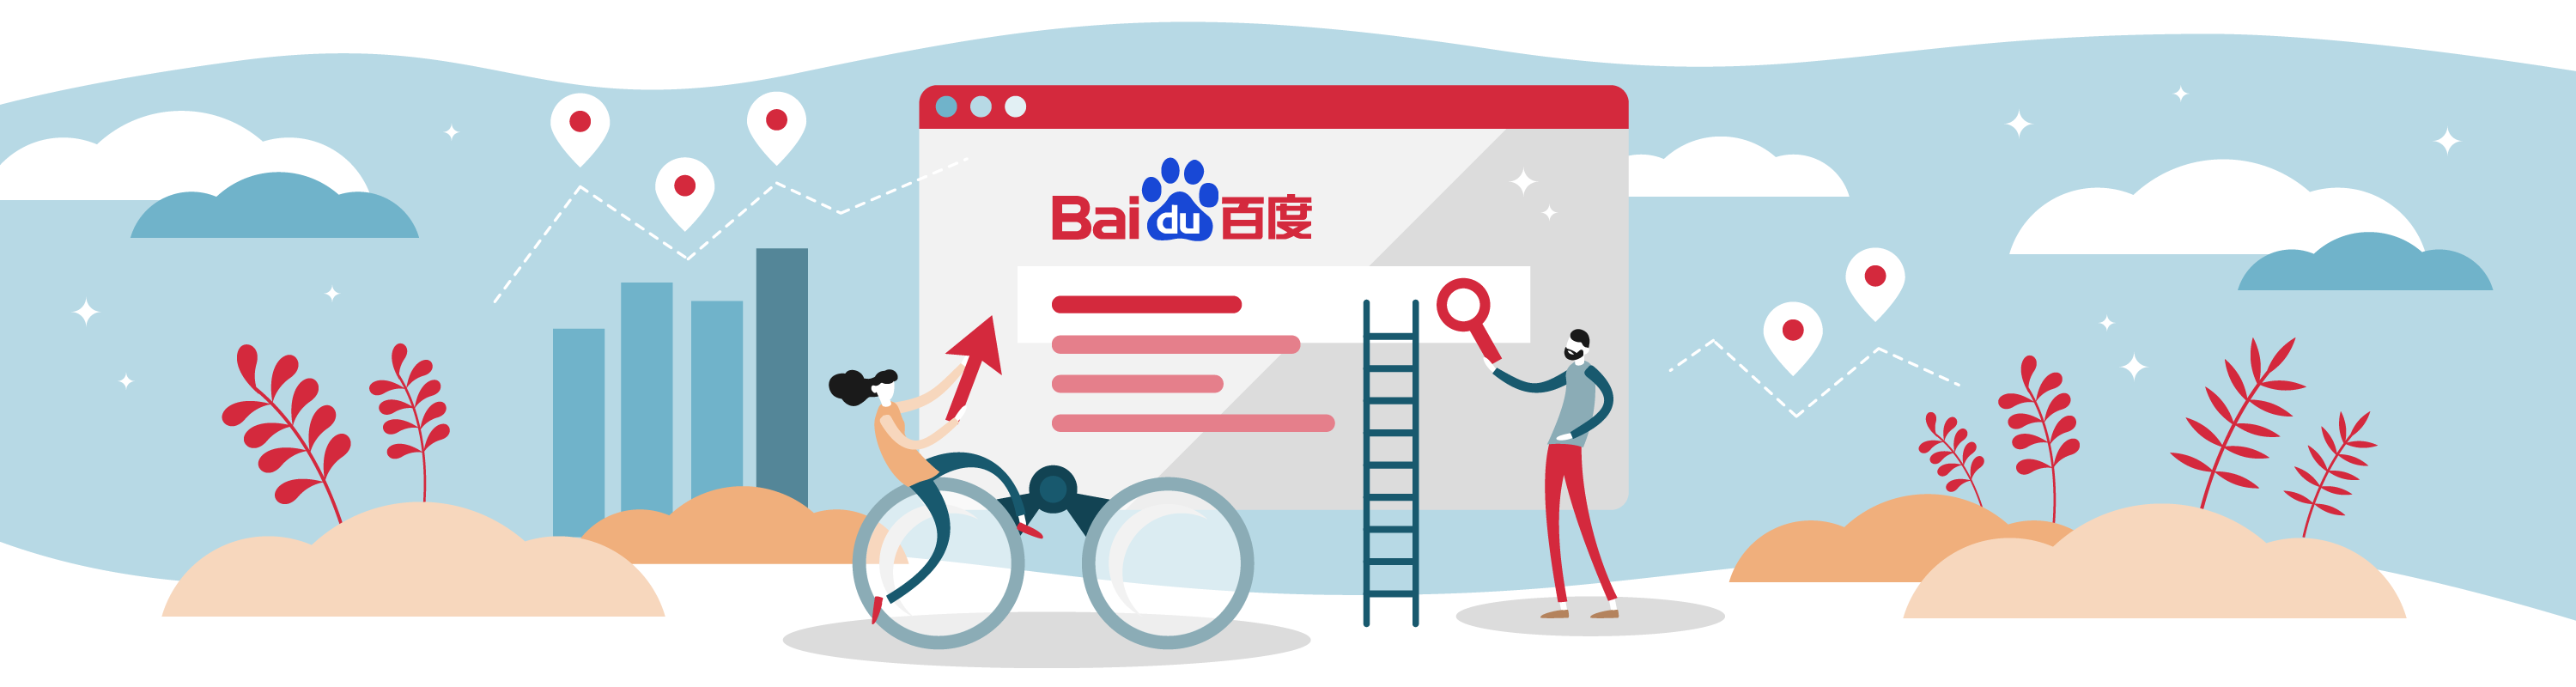 ขยายธุรกิจของคุณด้วยผ่าน Baidu คู่แข่งคนสำคัญของ Google